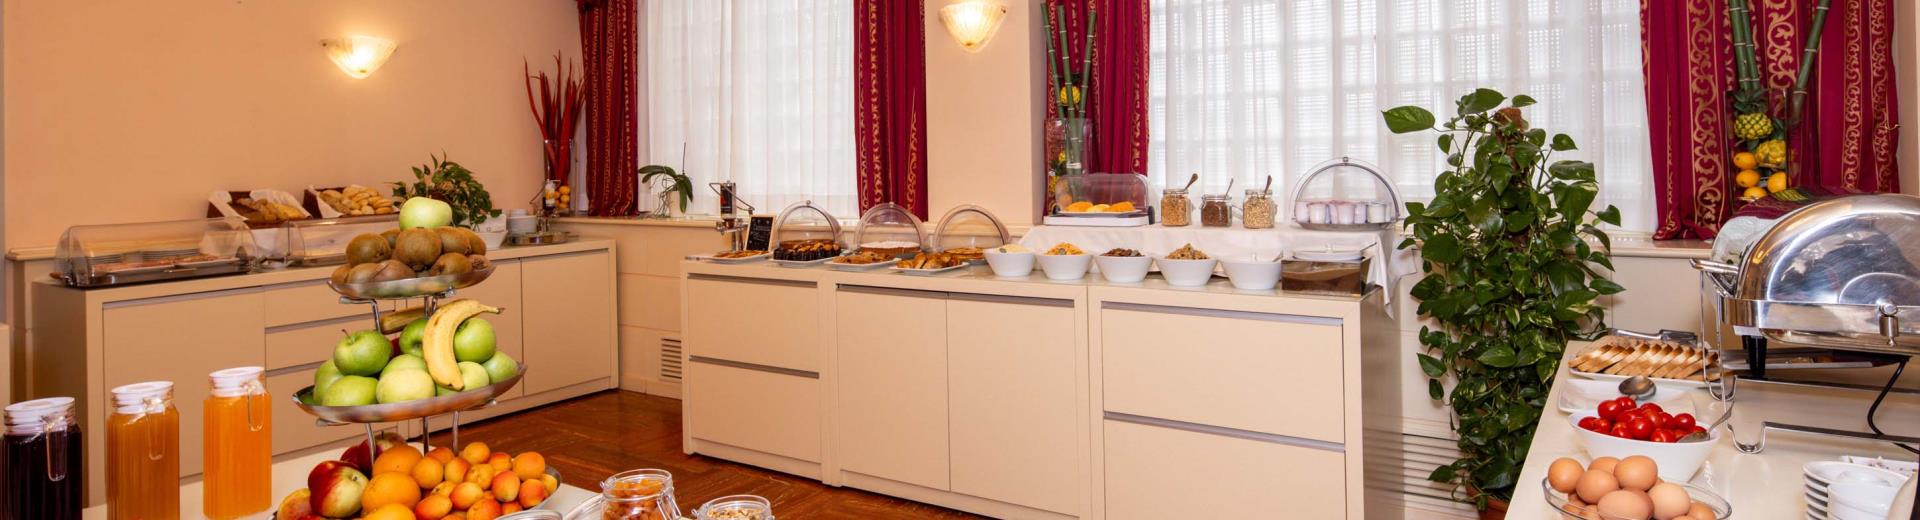 BW Gorizia Palace - Breakfast Buffet